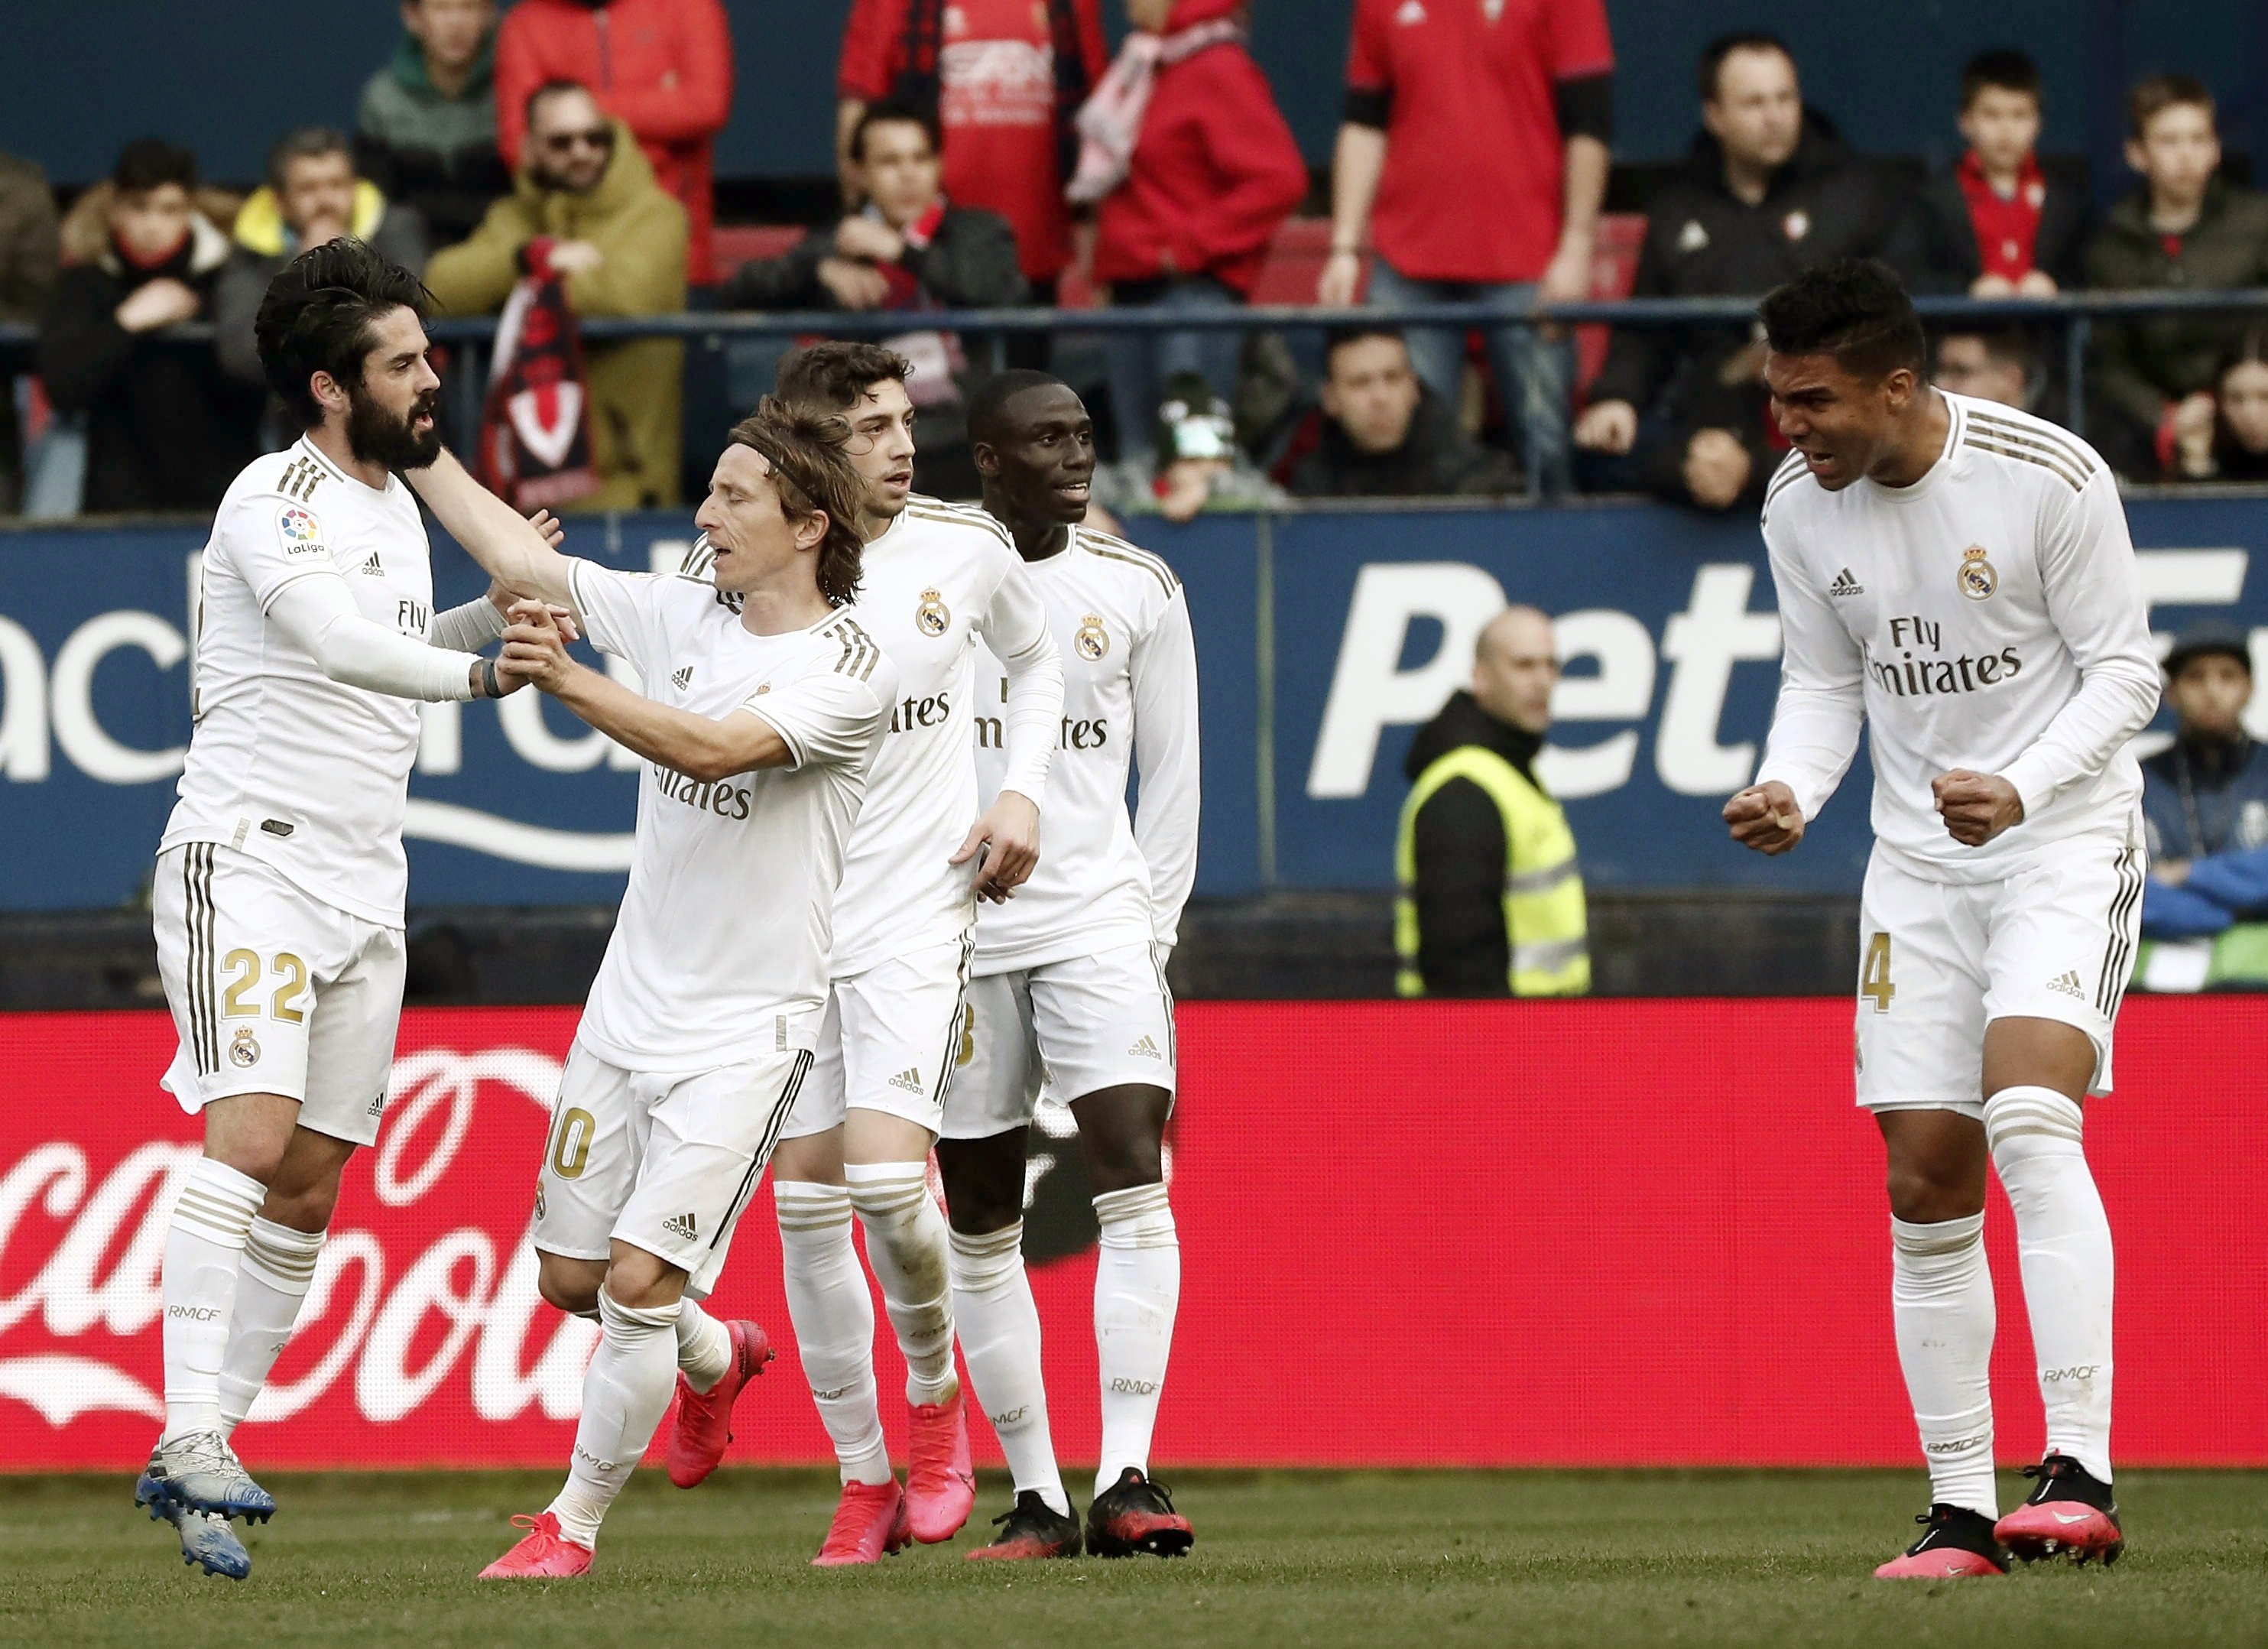 El Madrid guanya l'Osasuna en una tarda complicada per als de Zidane (1-4)